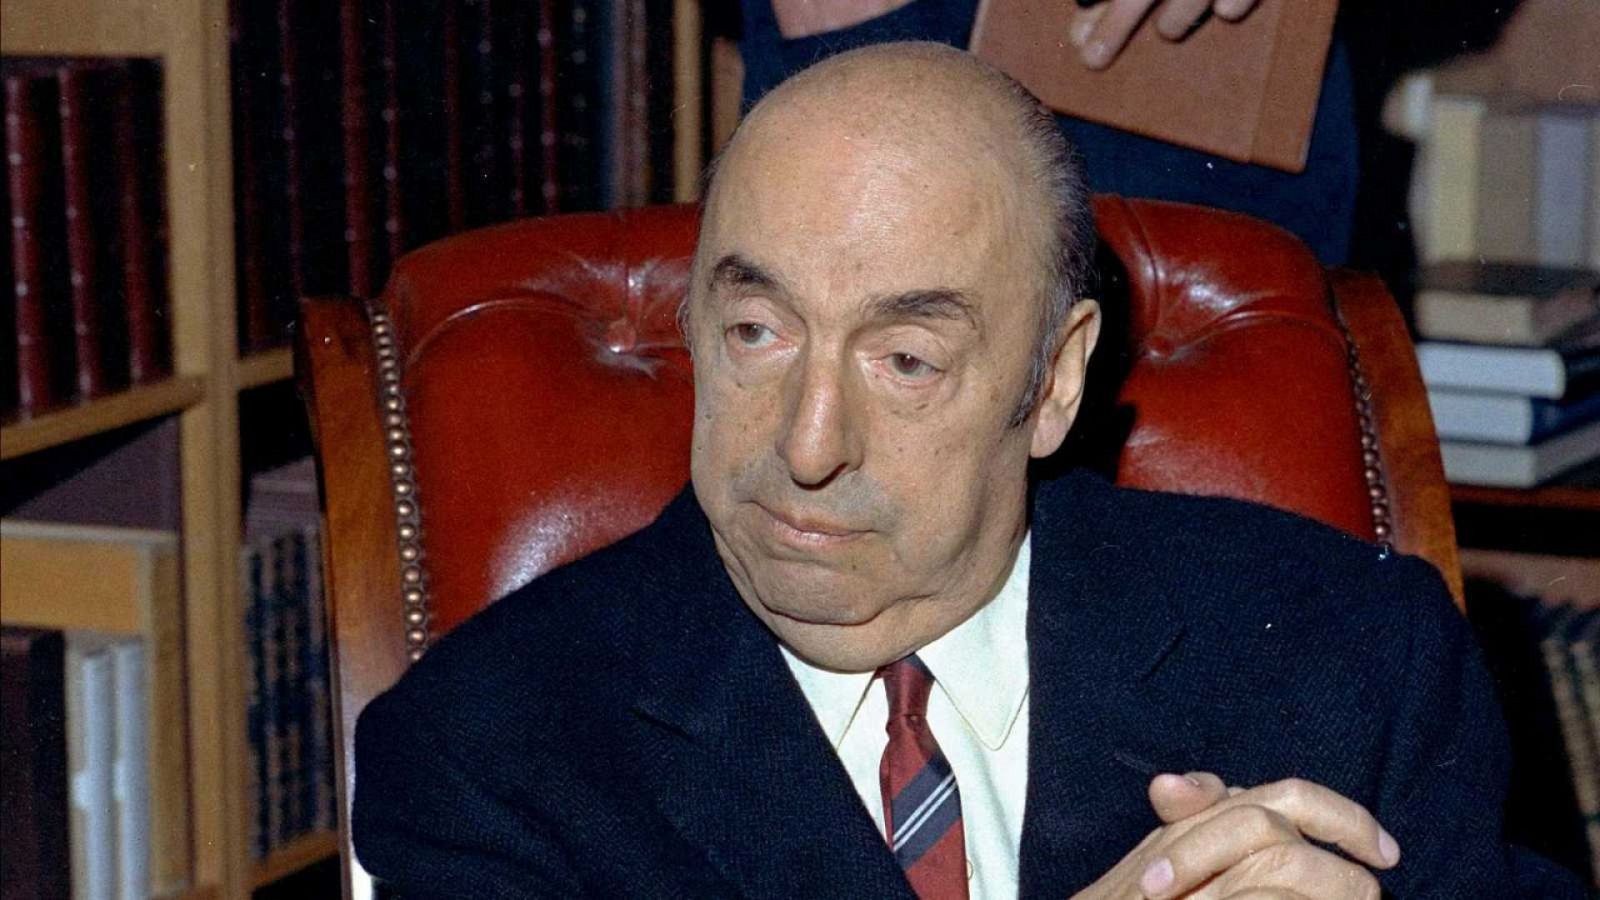 A media mañana - Pablo Neruda y el misterio de su muerte